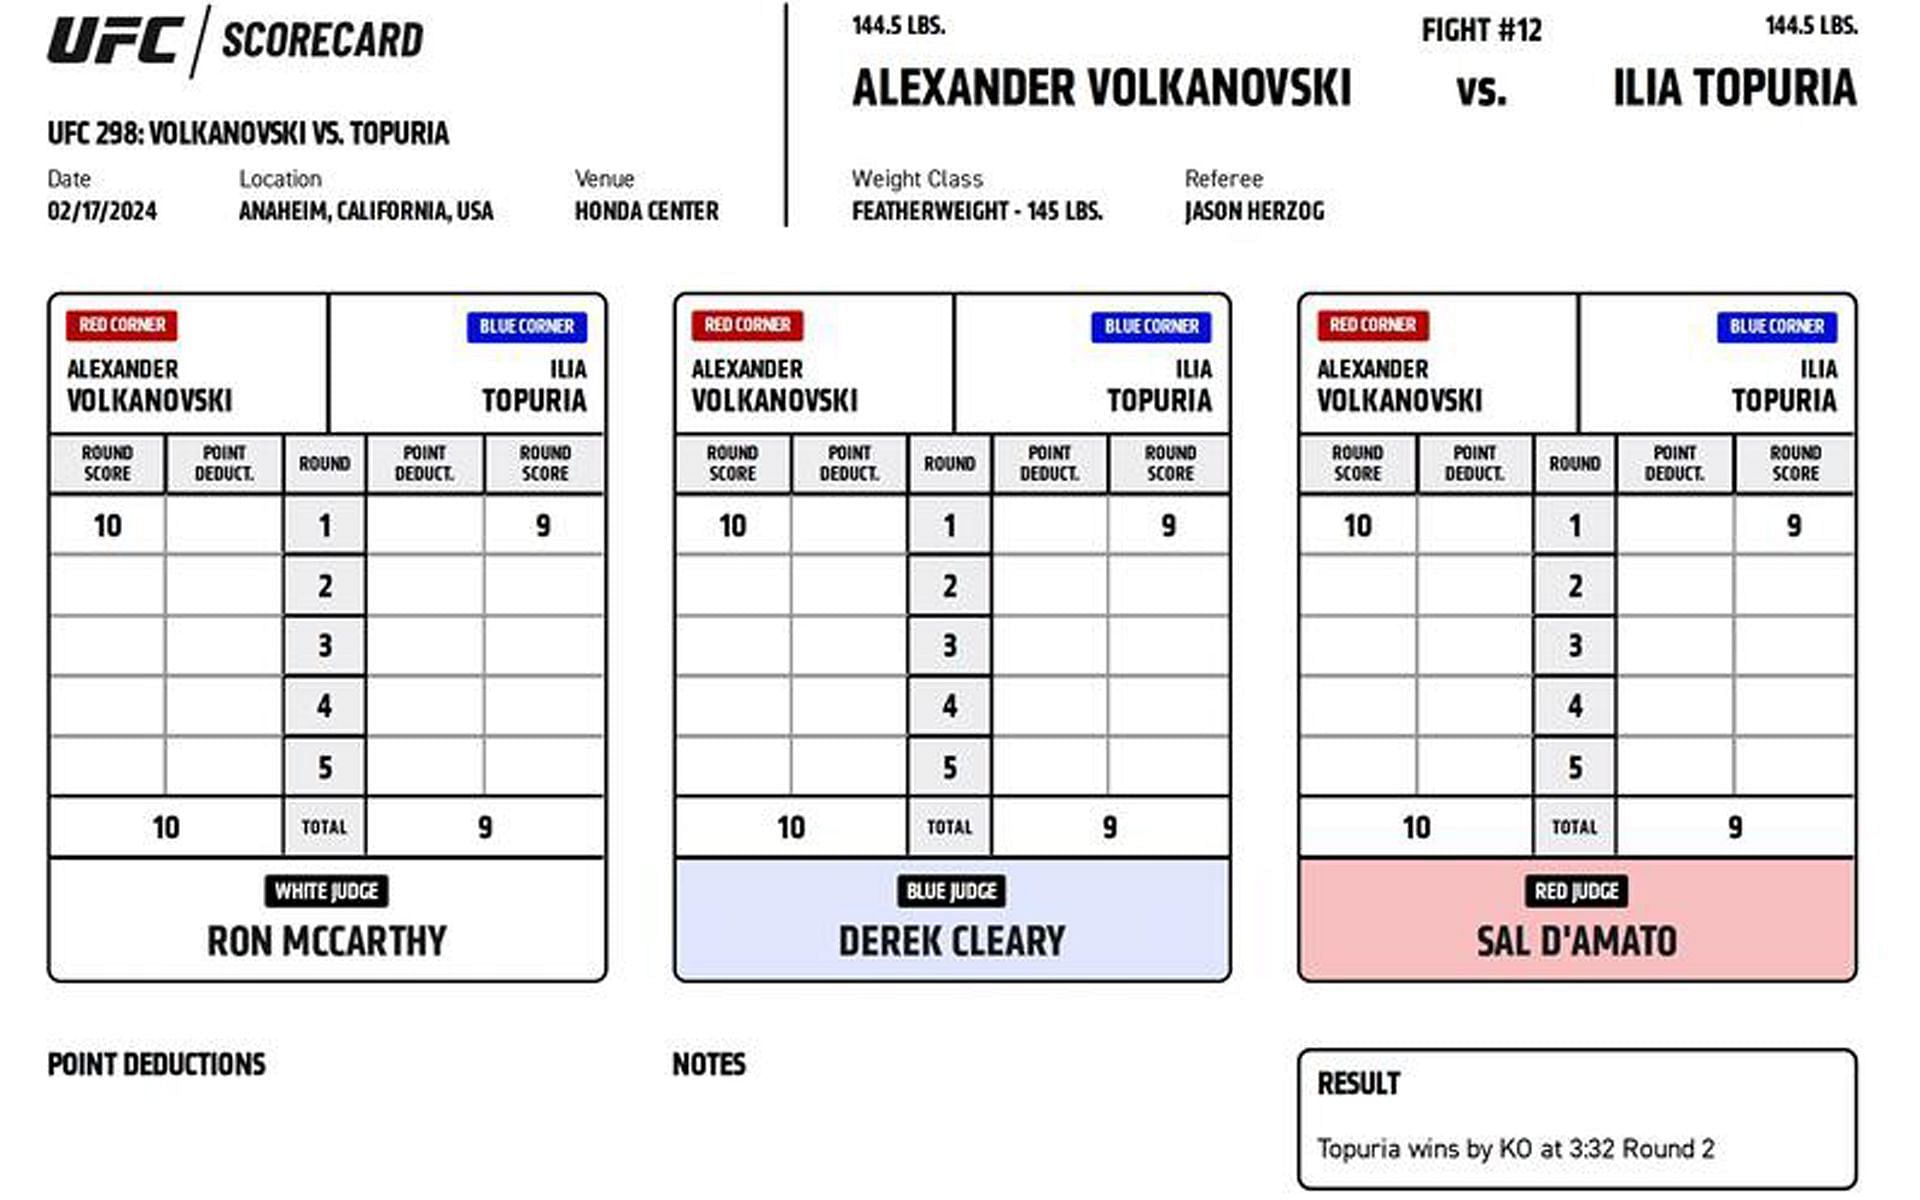 Ilia Topuria def. Alexander Volkanovski via knockout (R2, 3:32)